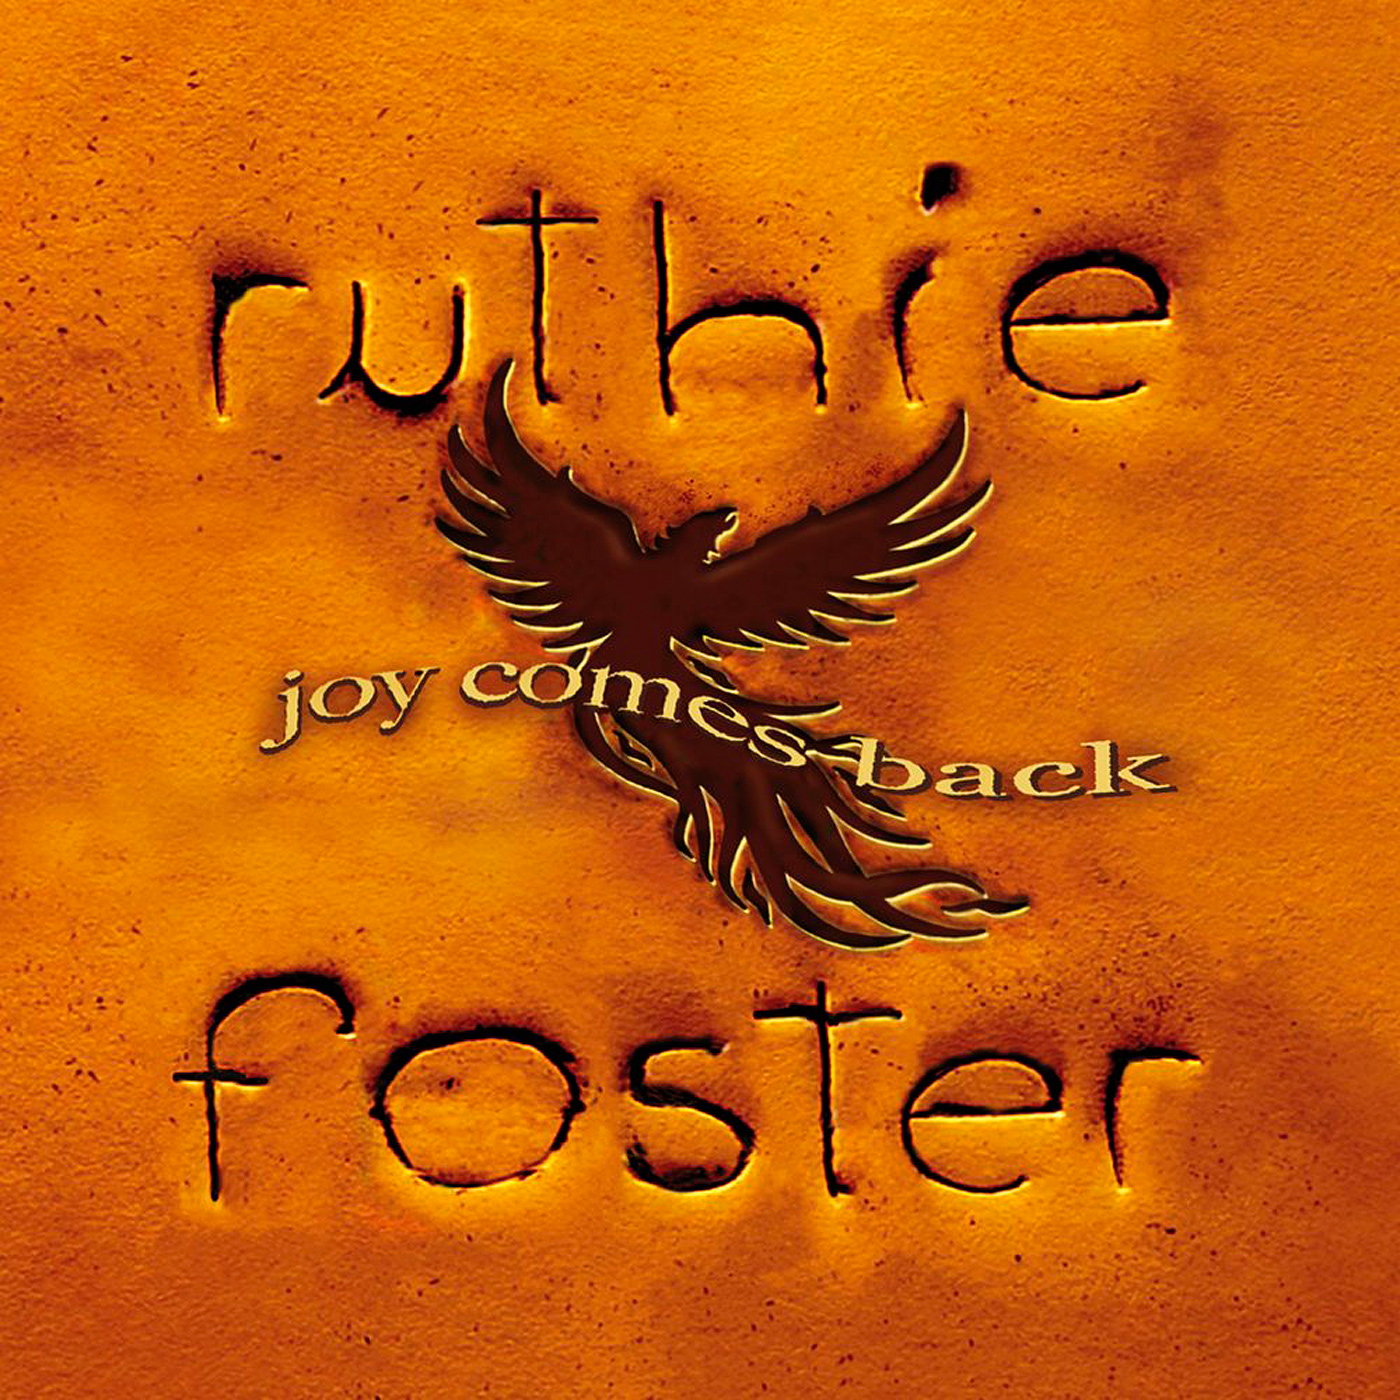 Ruthie Foster - Joy Comes Back (2017) [Qobuz FLAC 24bit/44,1kHz]